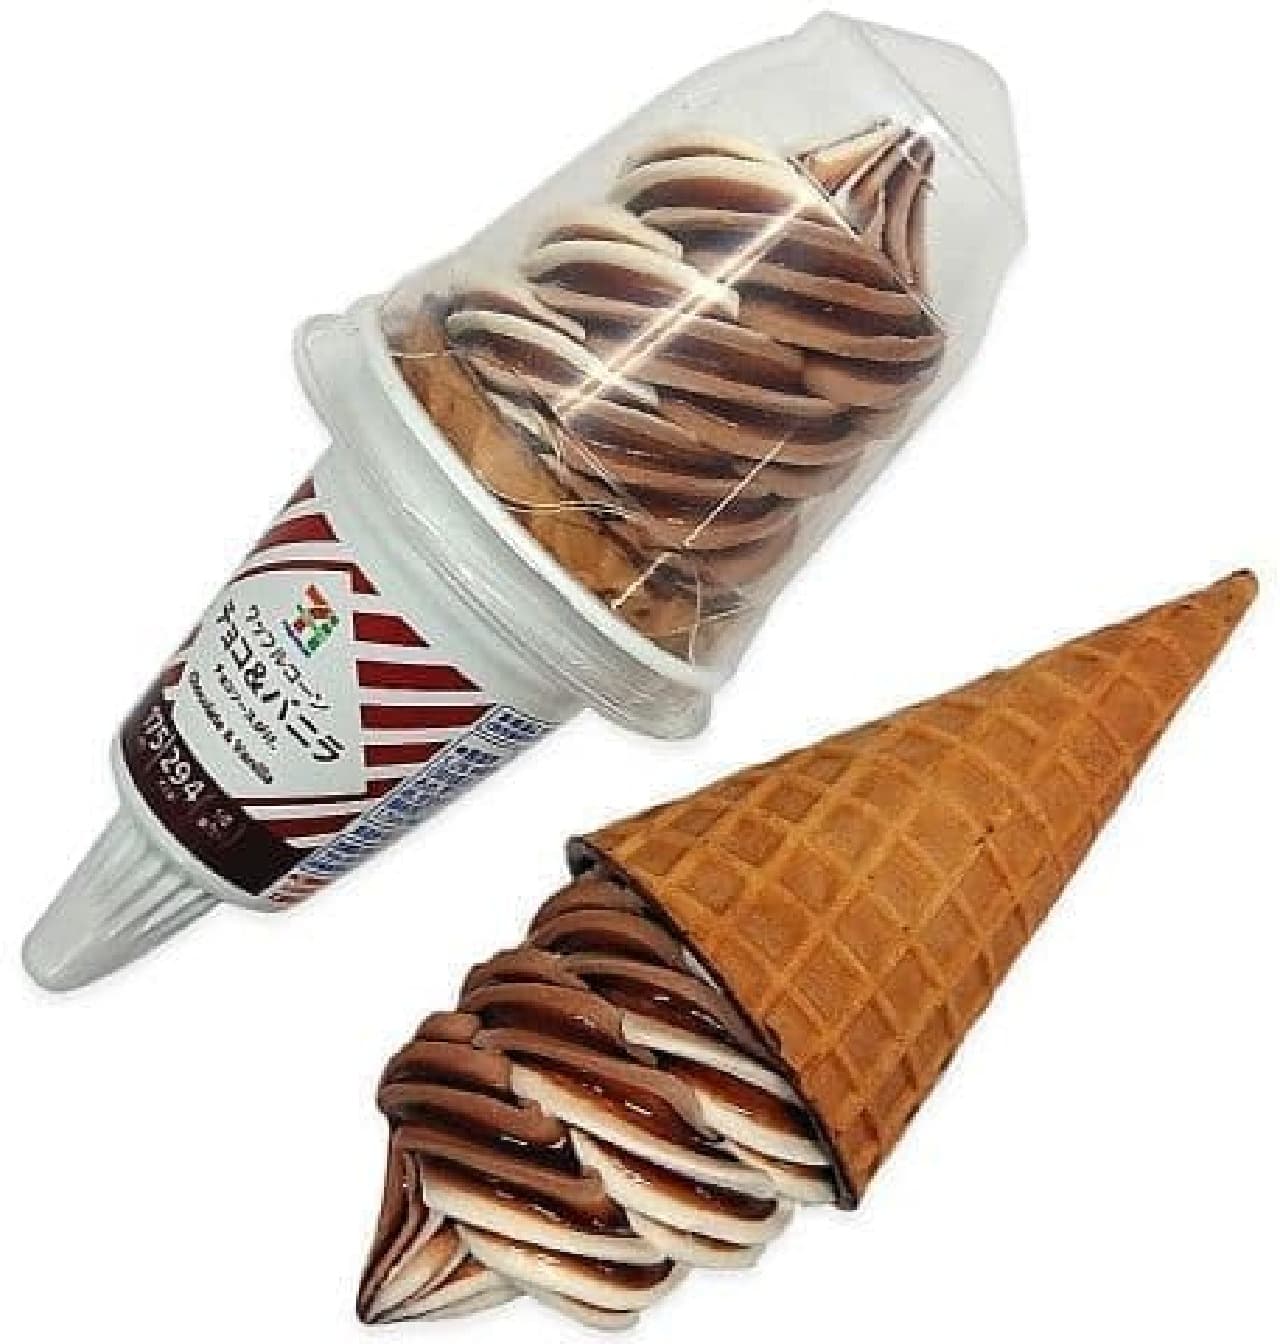 7-ELEVEN "7 Premium Waffle Cone Chocolate & Vanilla"